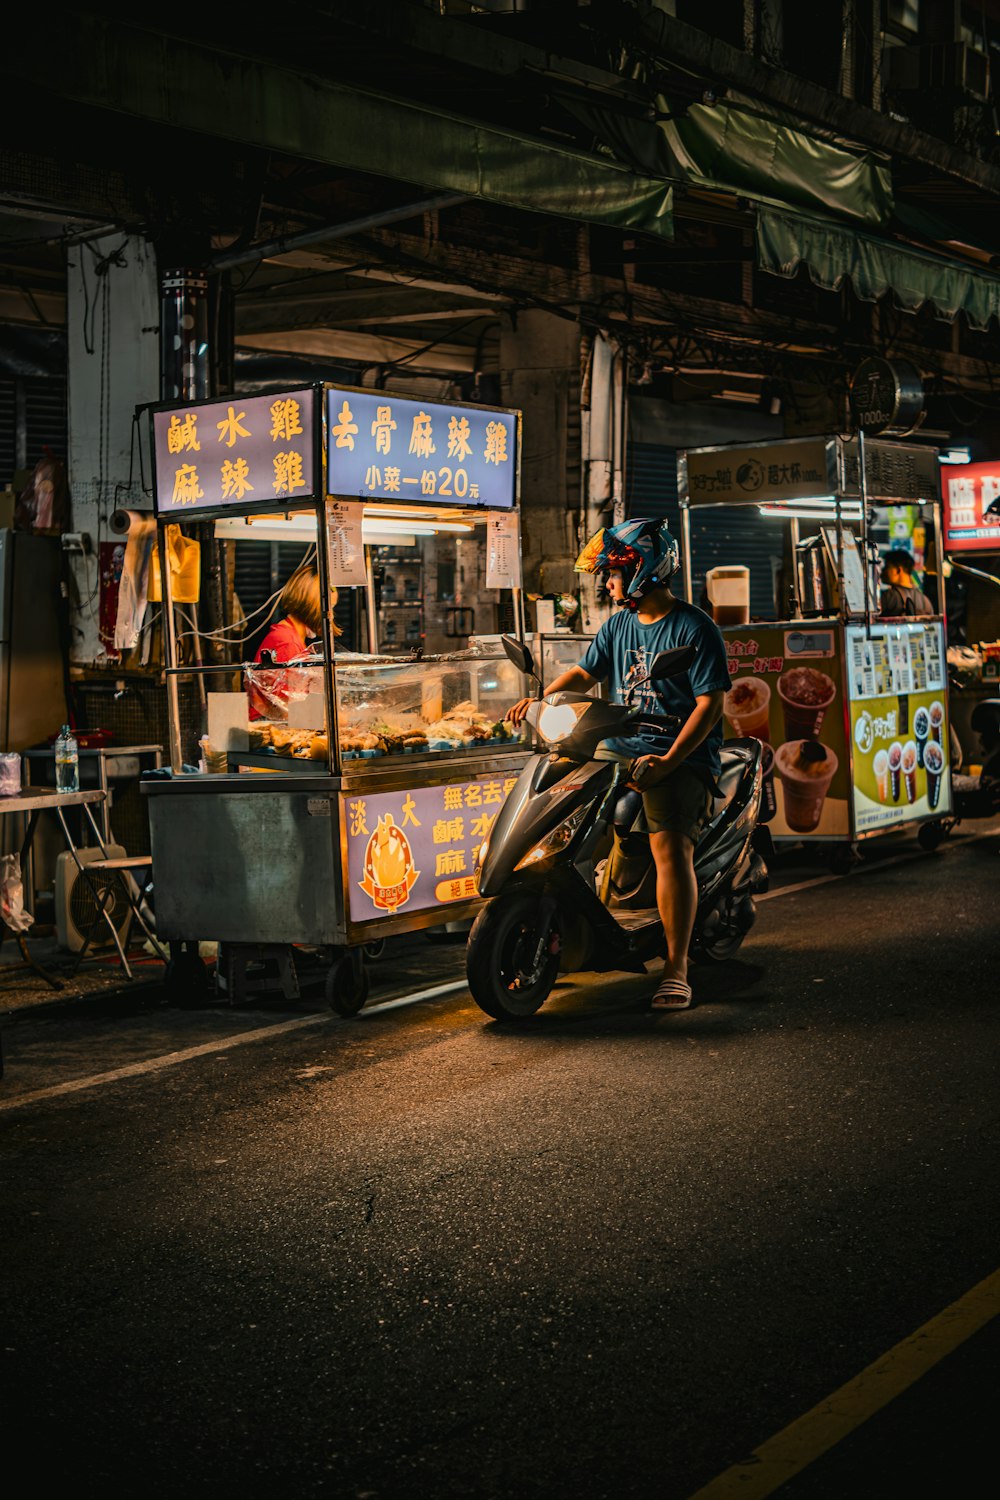 Un homme conduisant une moto dans une rue à côté d’un stand de nourriture